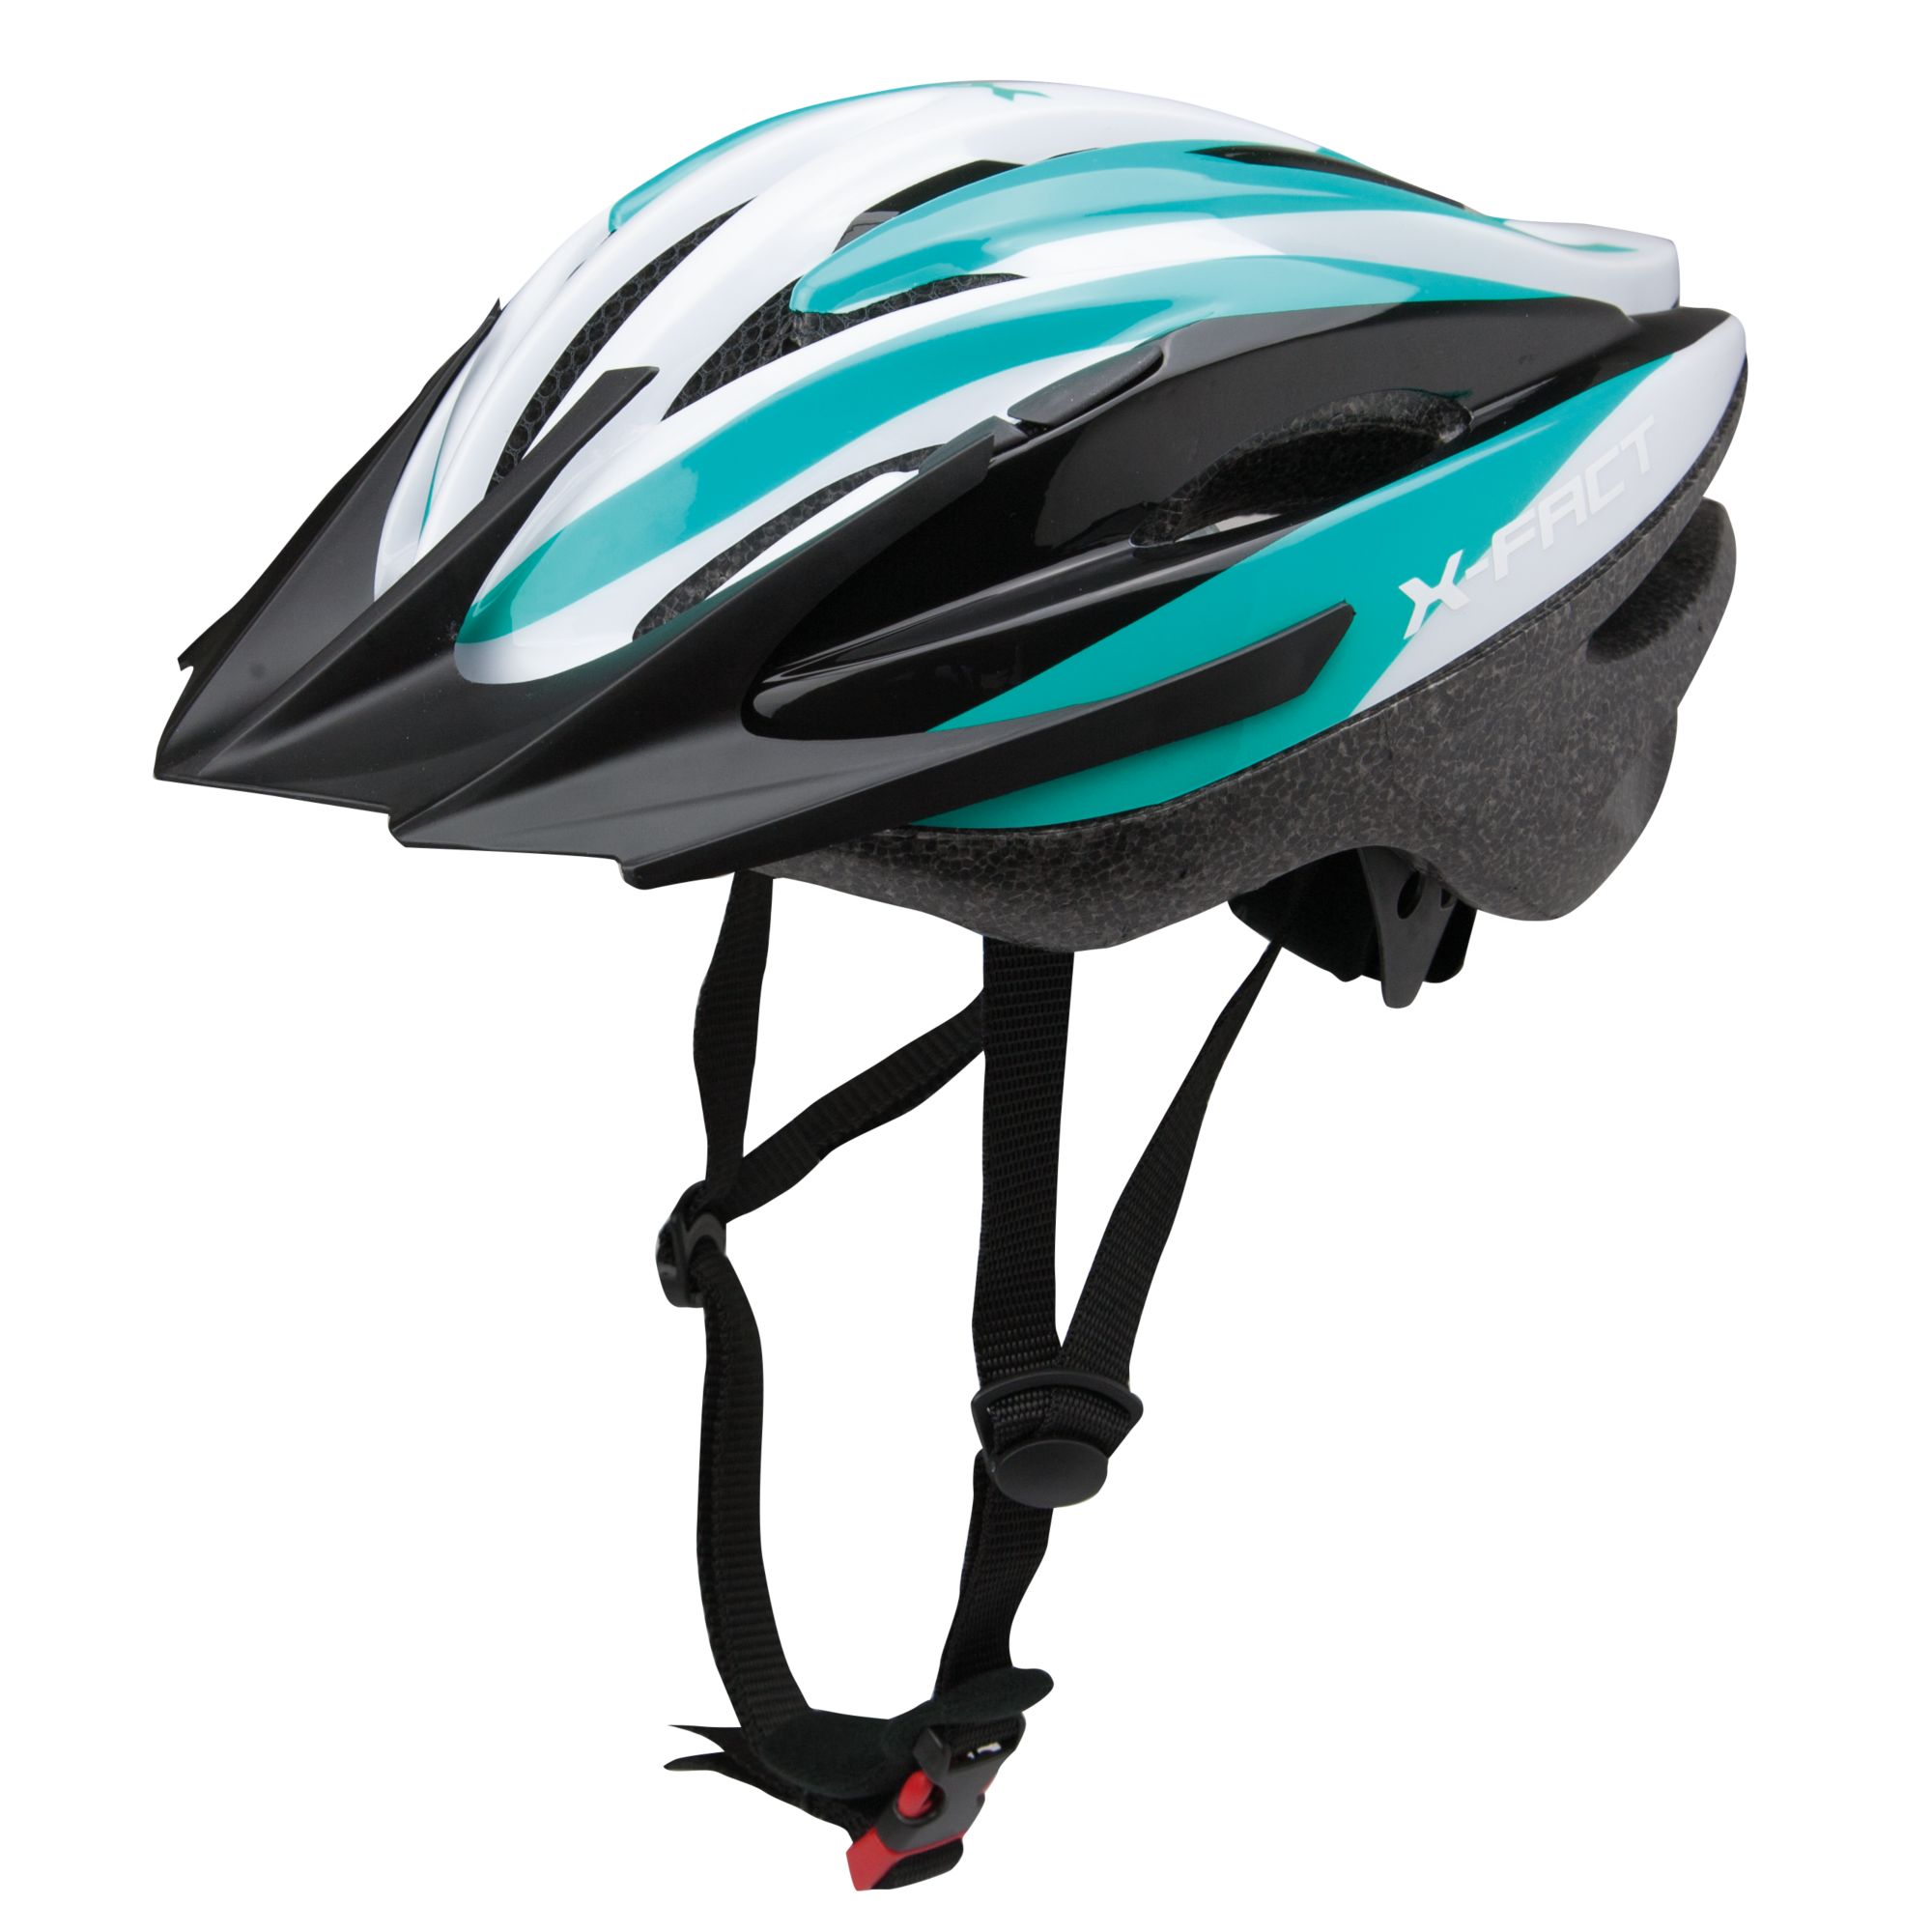 Helmet X10 biciclete